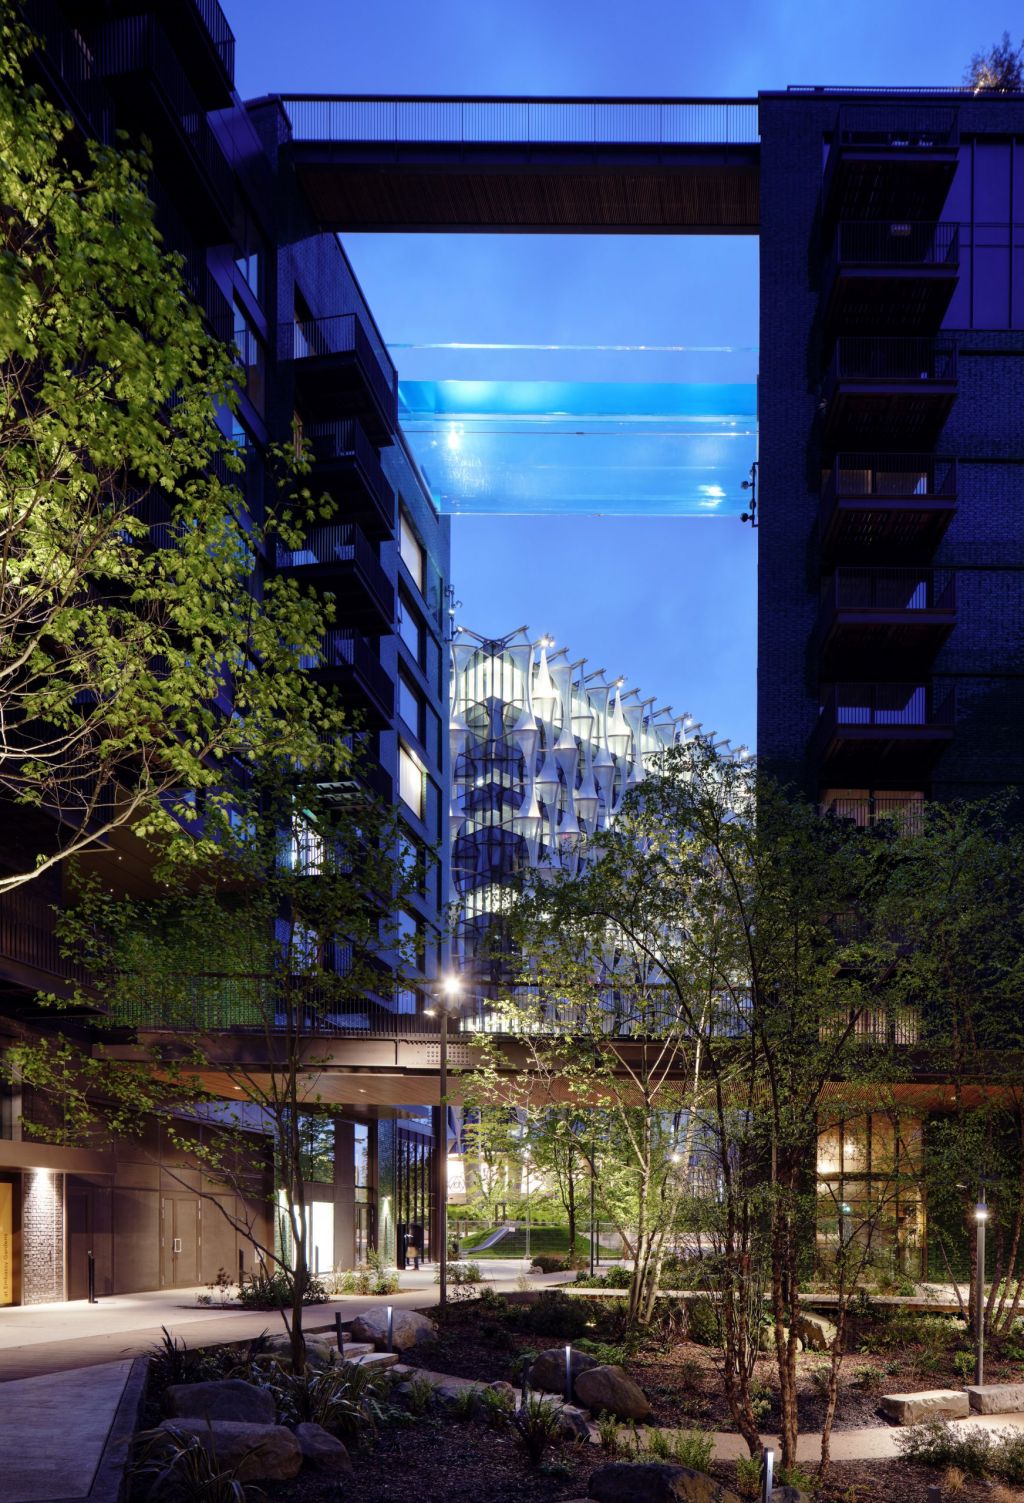 sky pool piscina transparente conecta dois blocos residenciais em londres